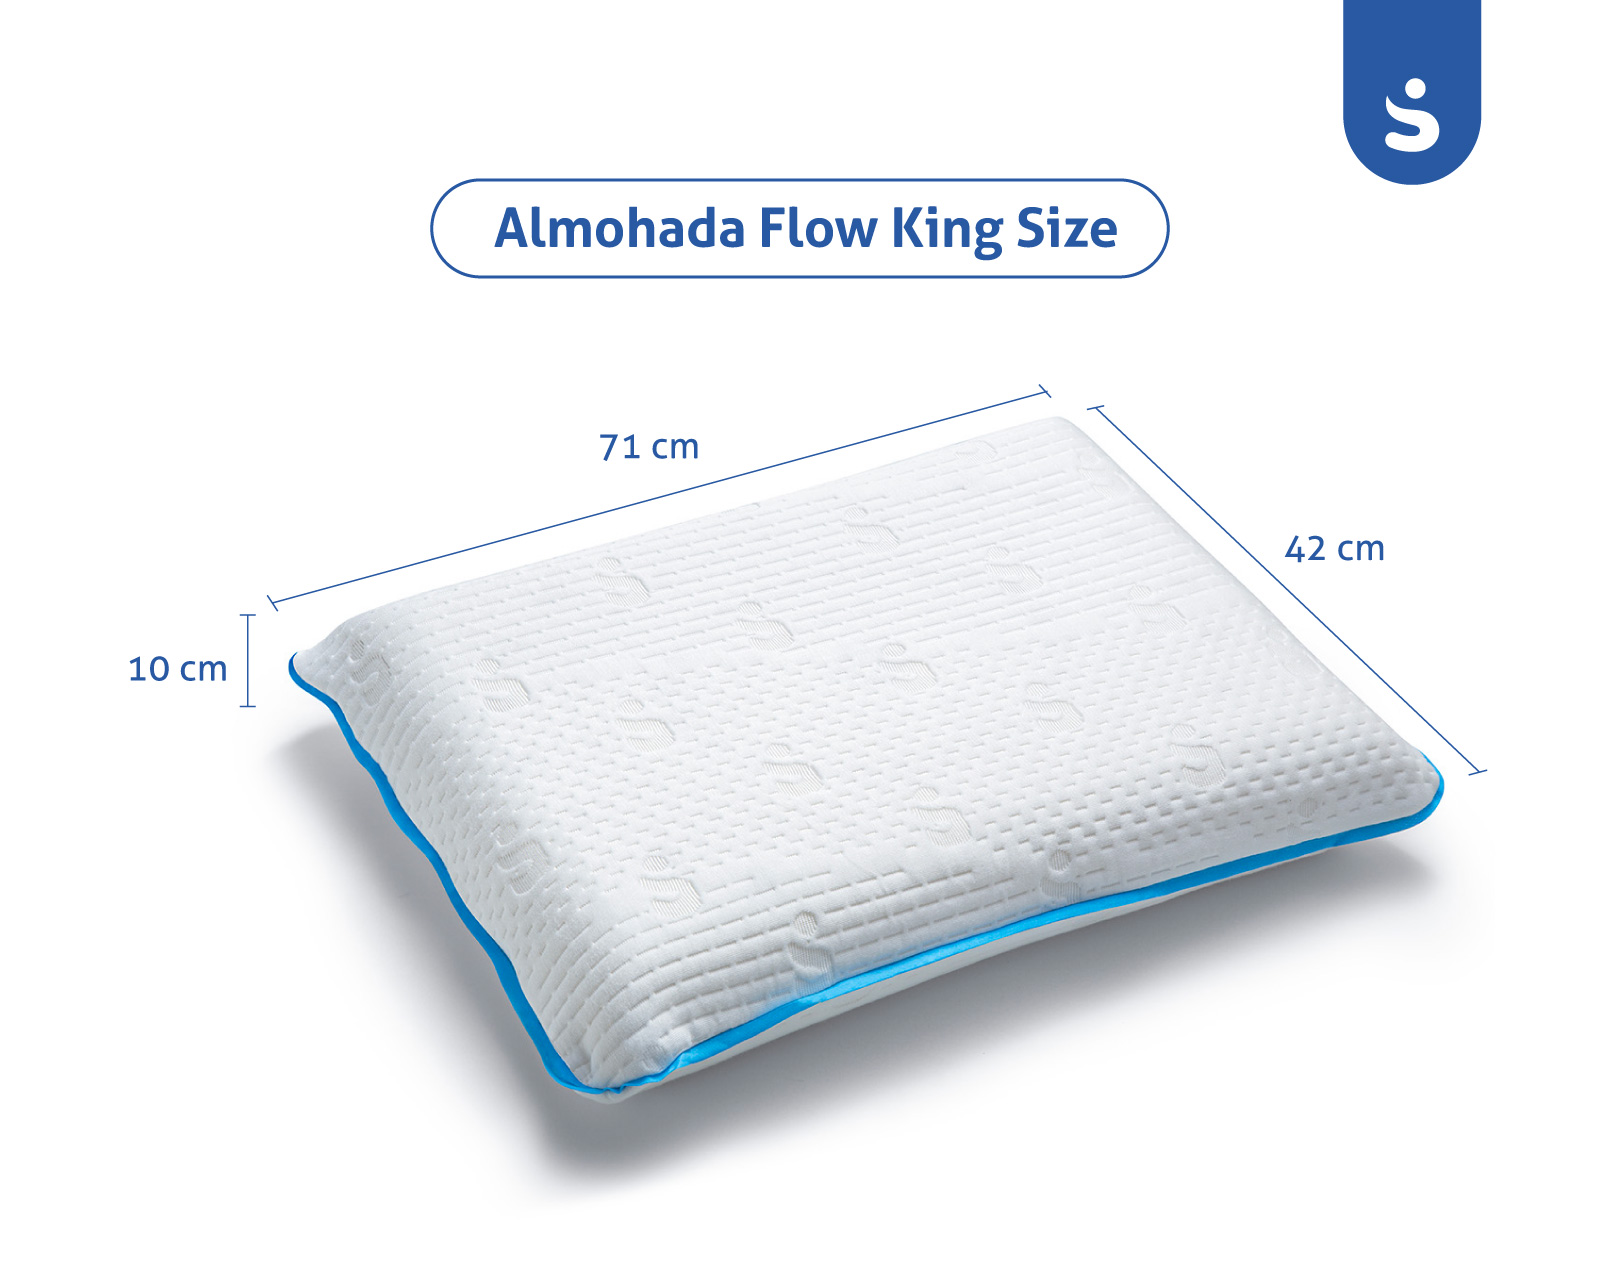 Almohada de Memory Foam Premium tamaño King Size en una sola pieza SenSei Flow